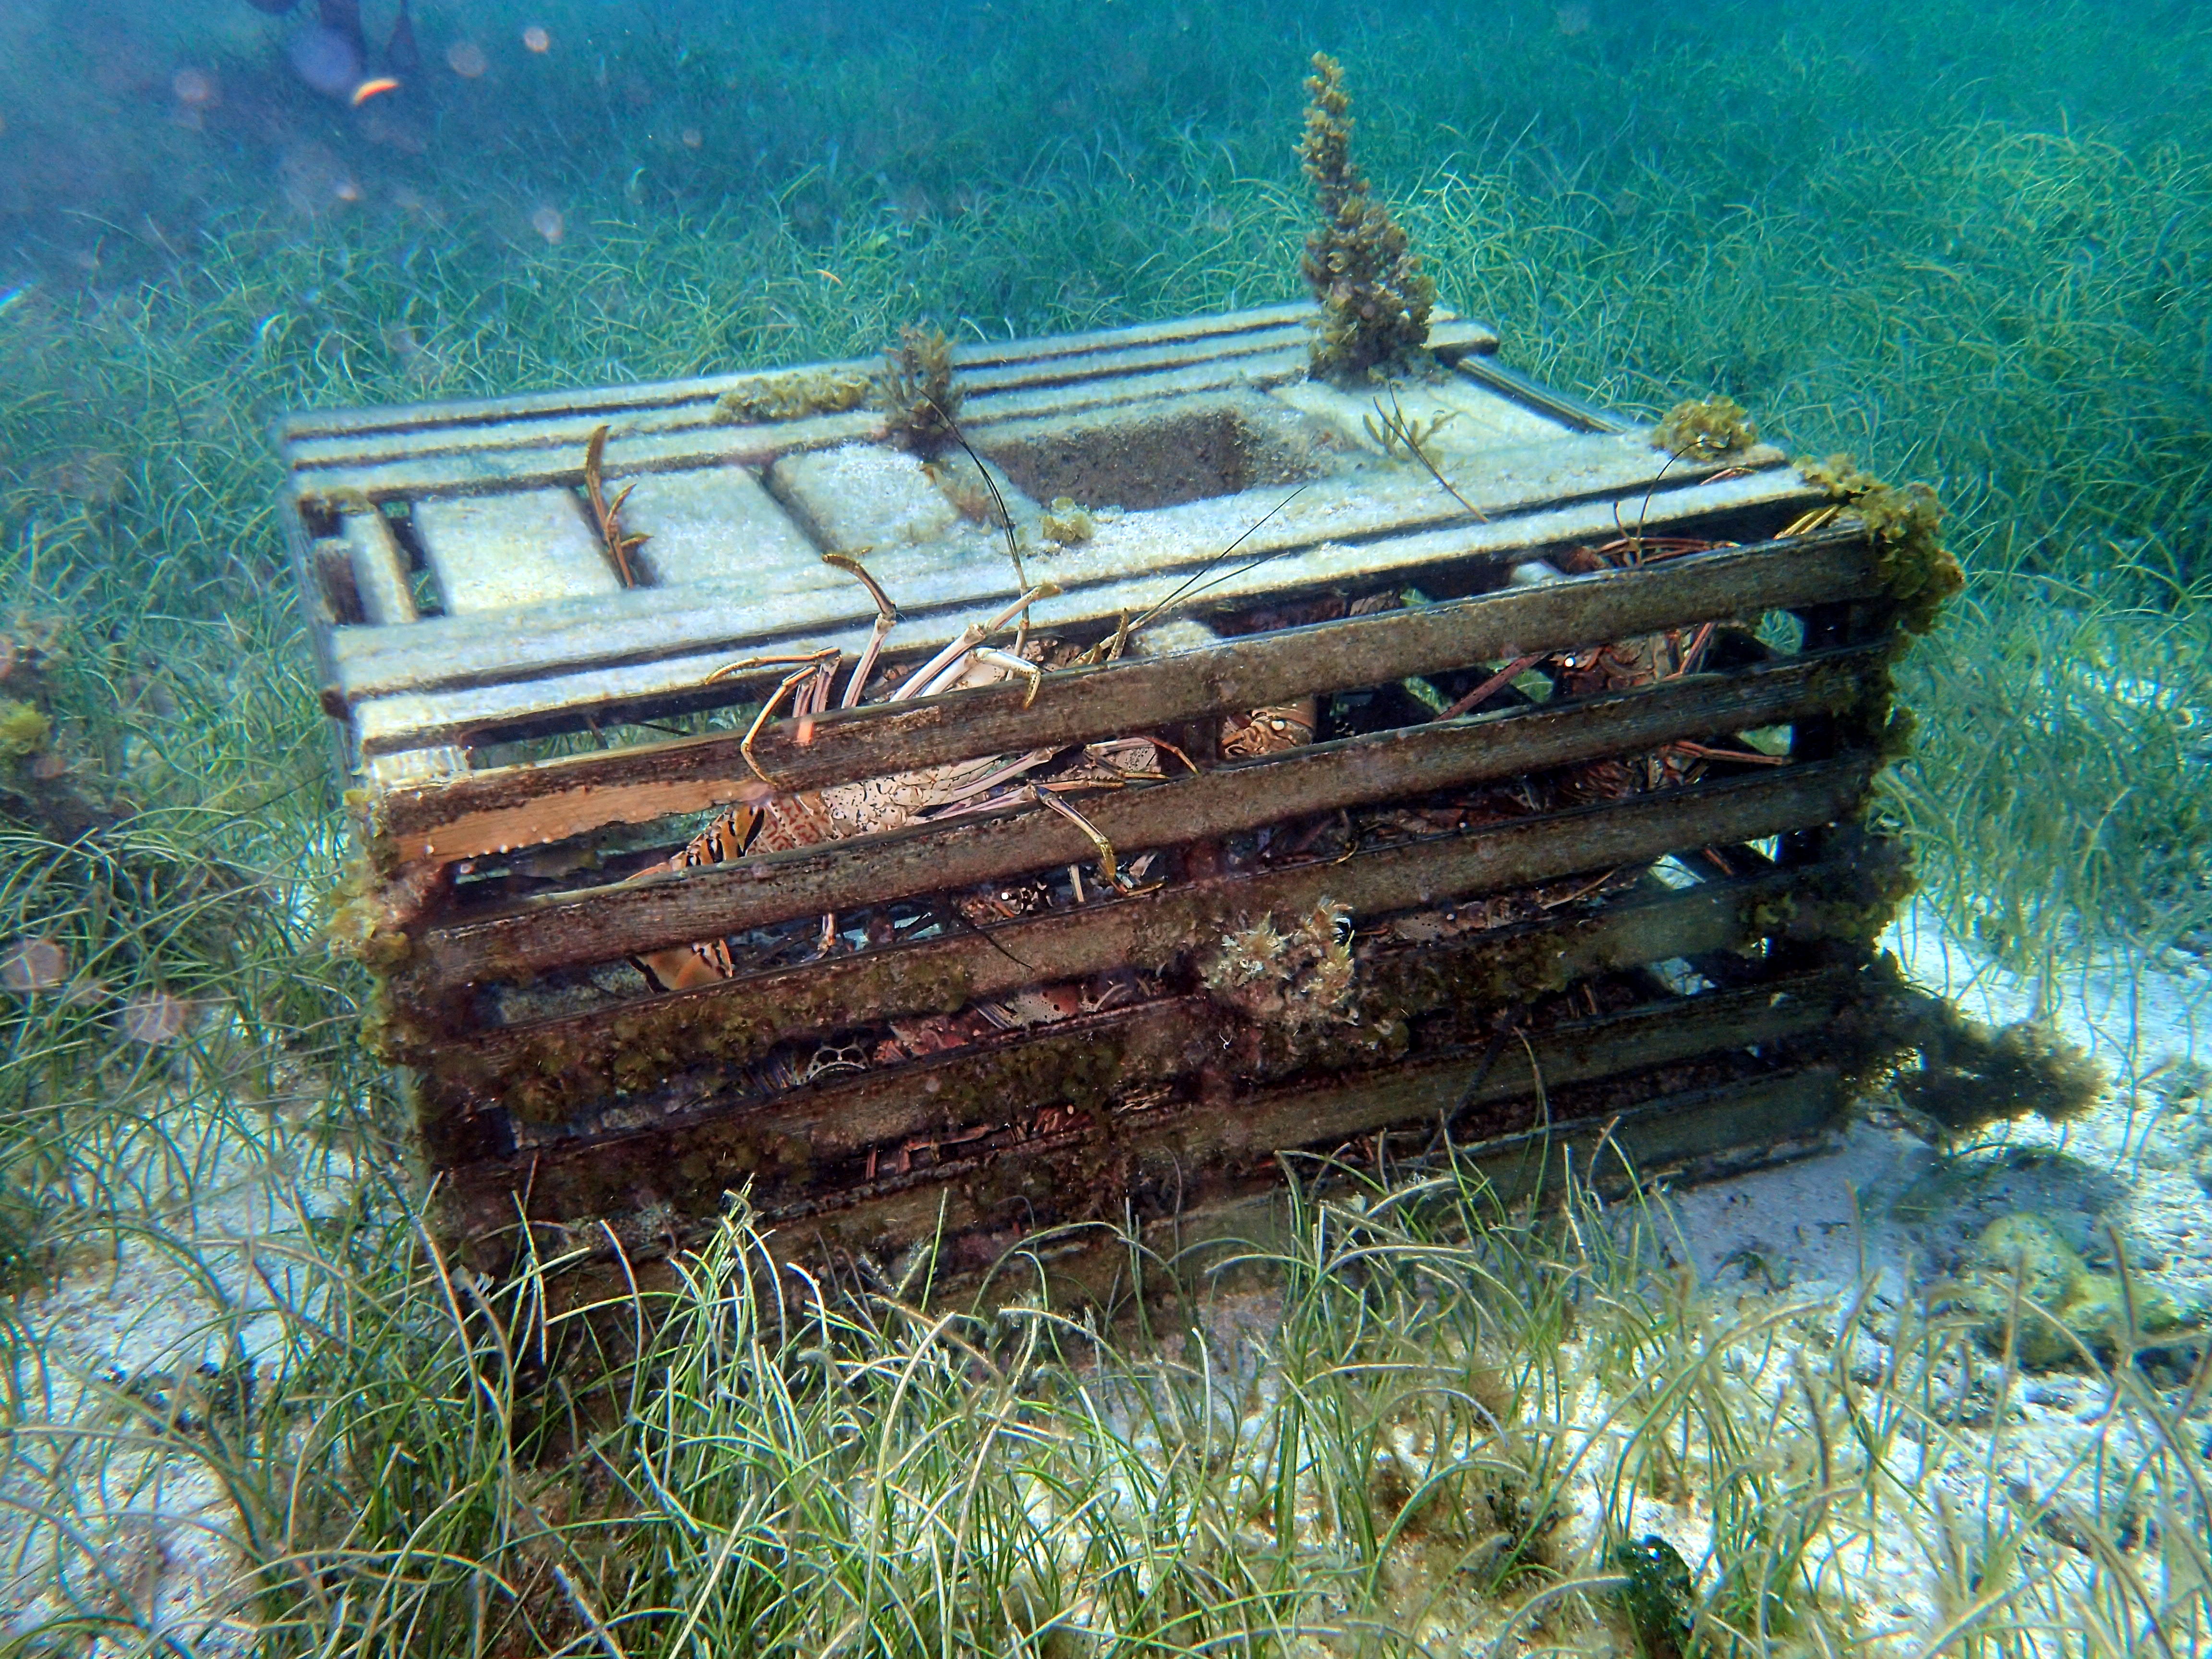 Lobster trap on seafloor